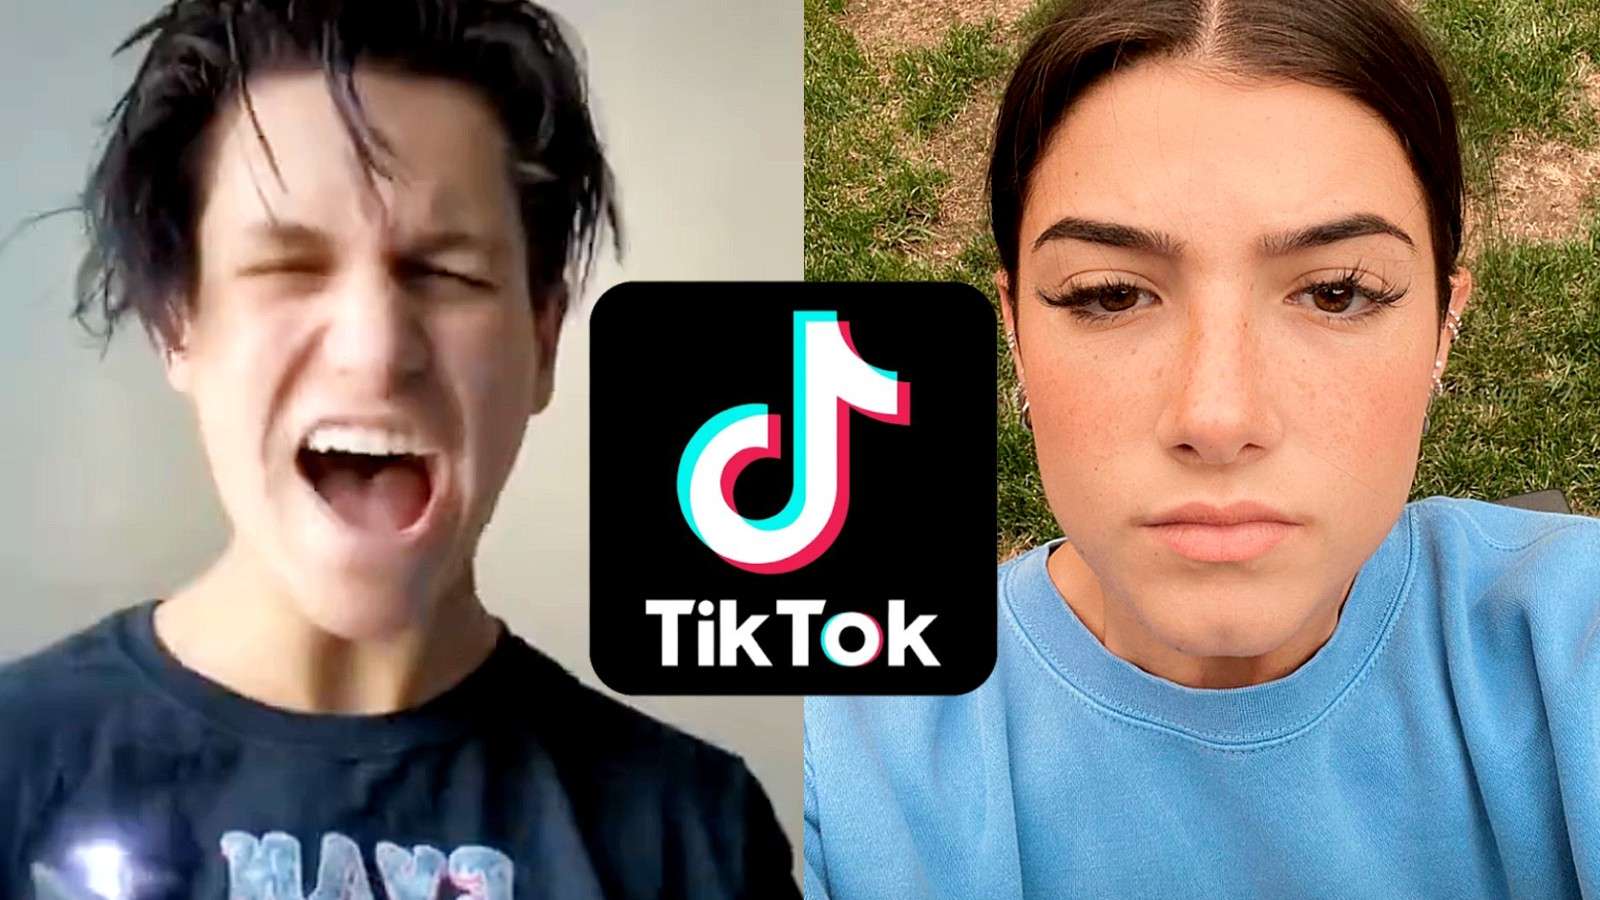 TikTok stars react to US ban, Charli D'Amelio, Chase Hudson